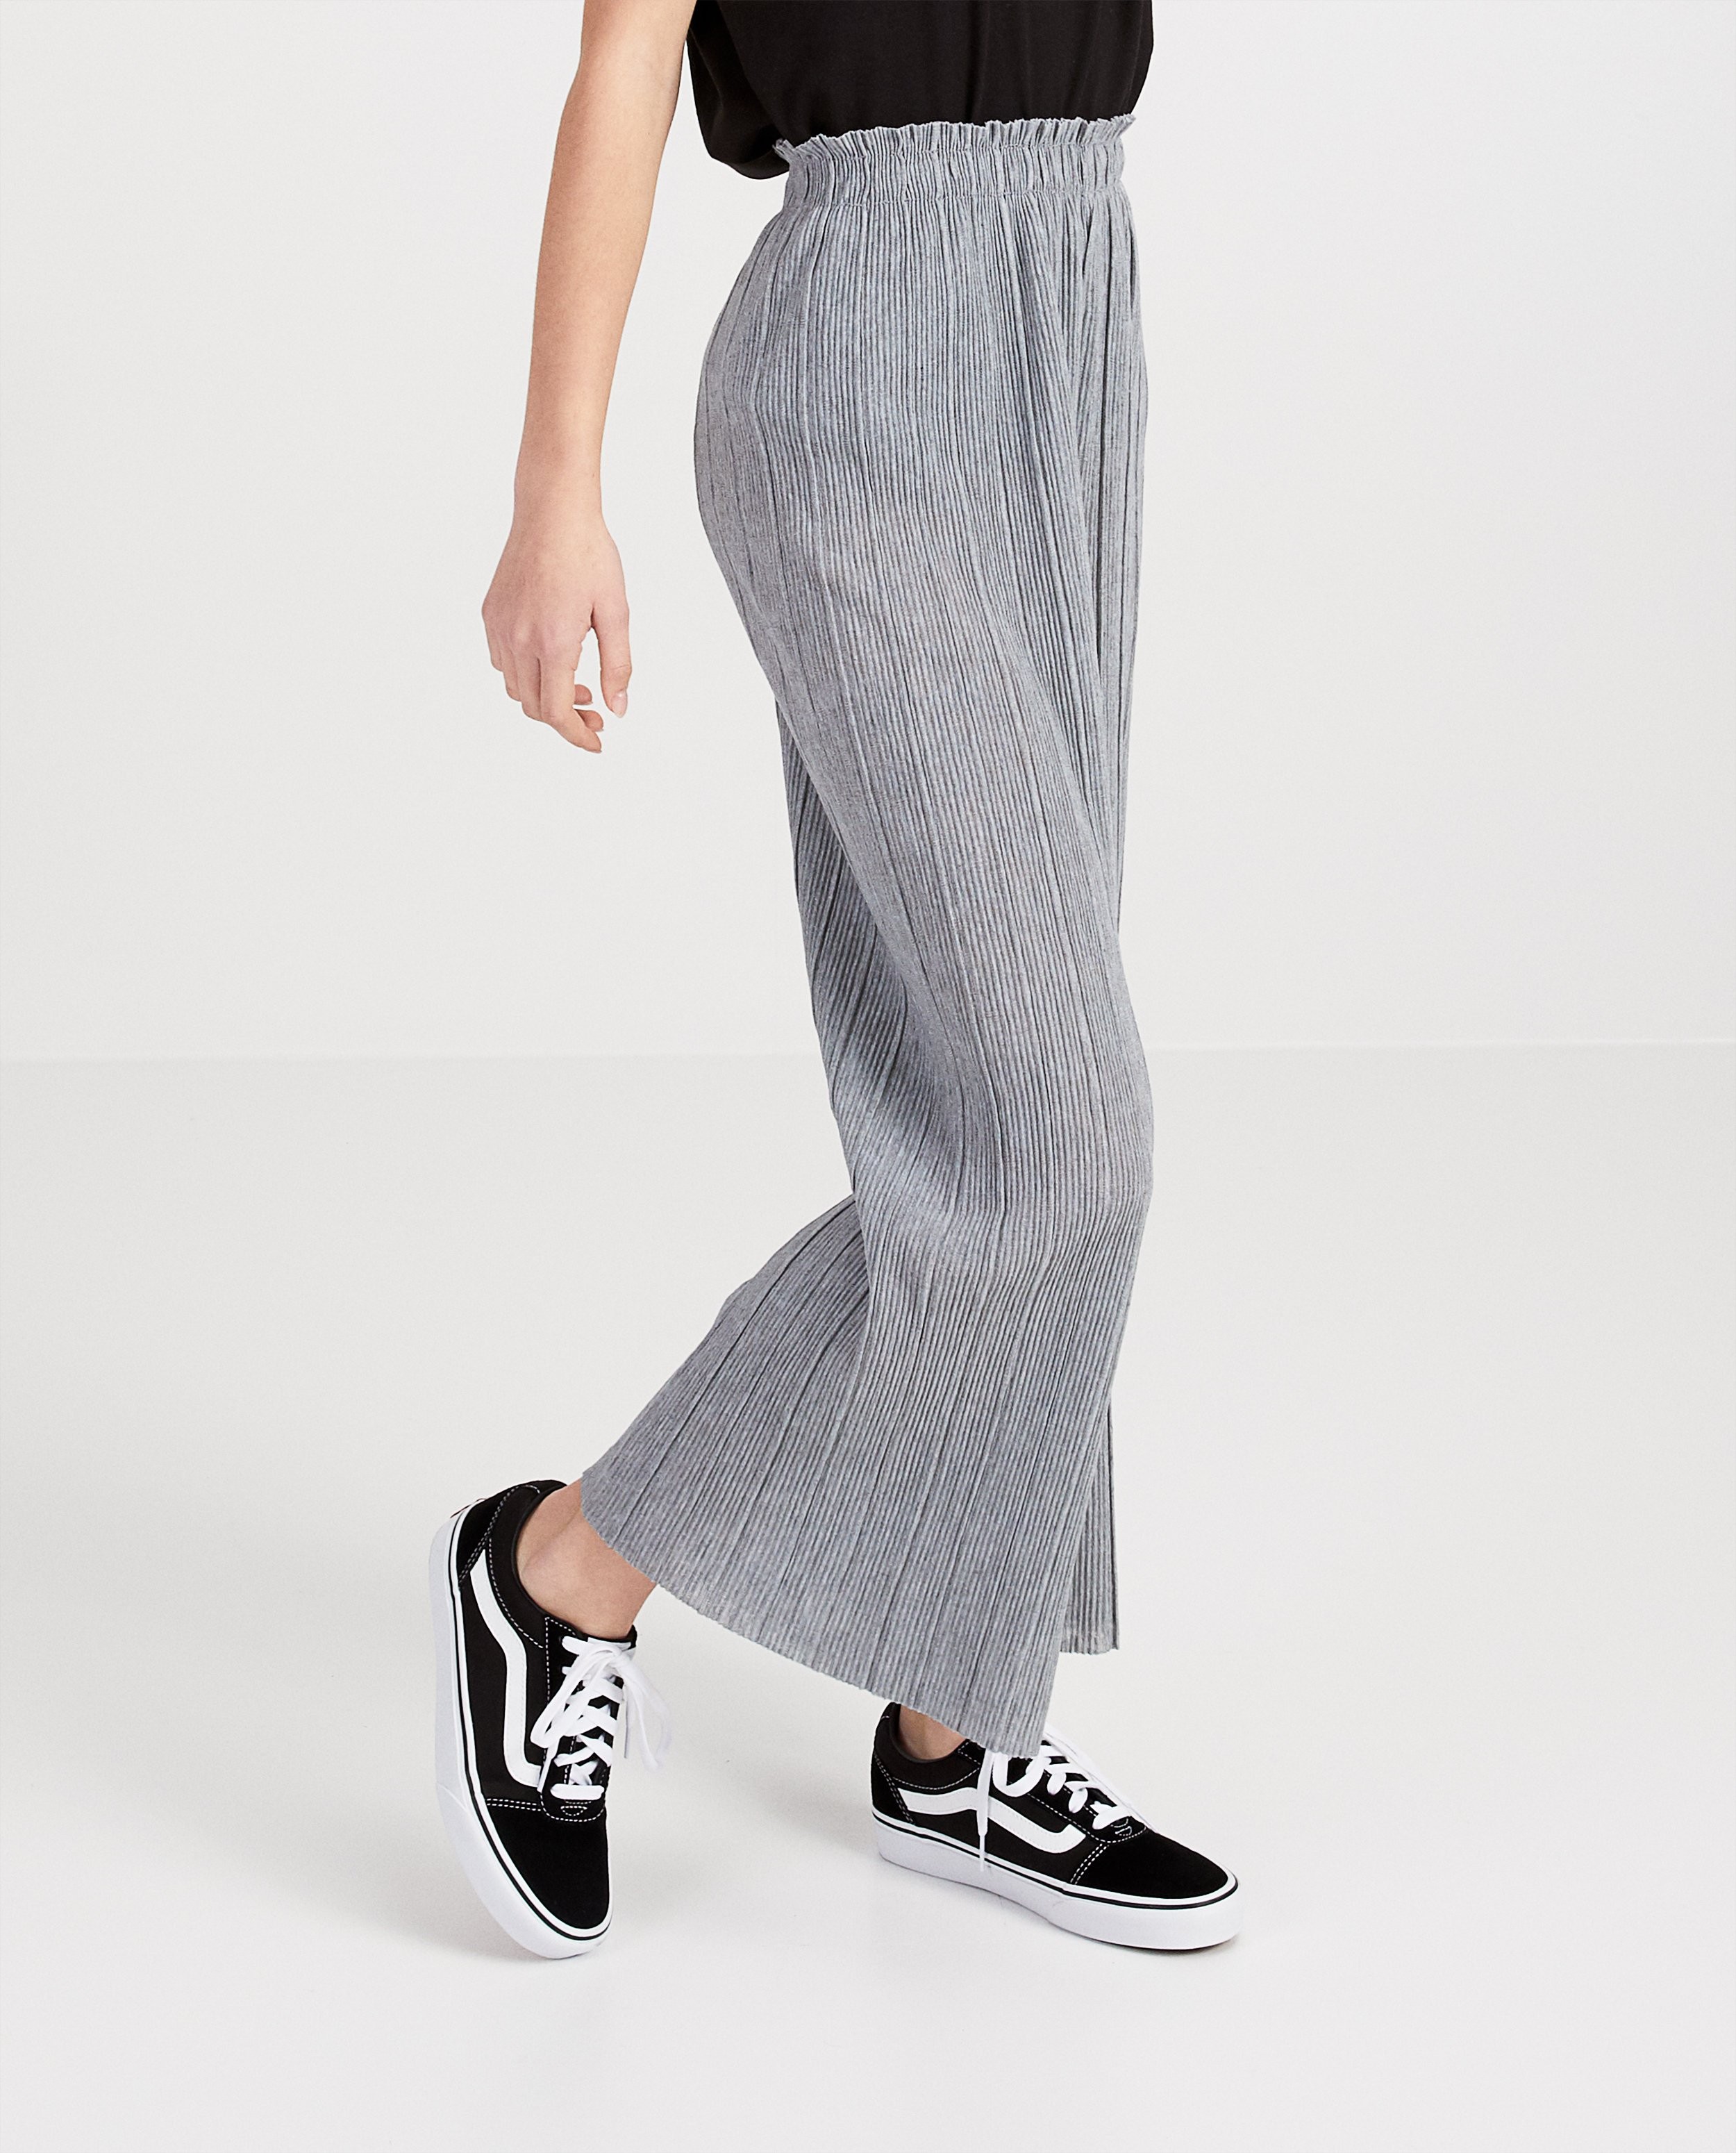 Pantalons - Pantalon plissé gris